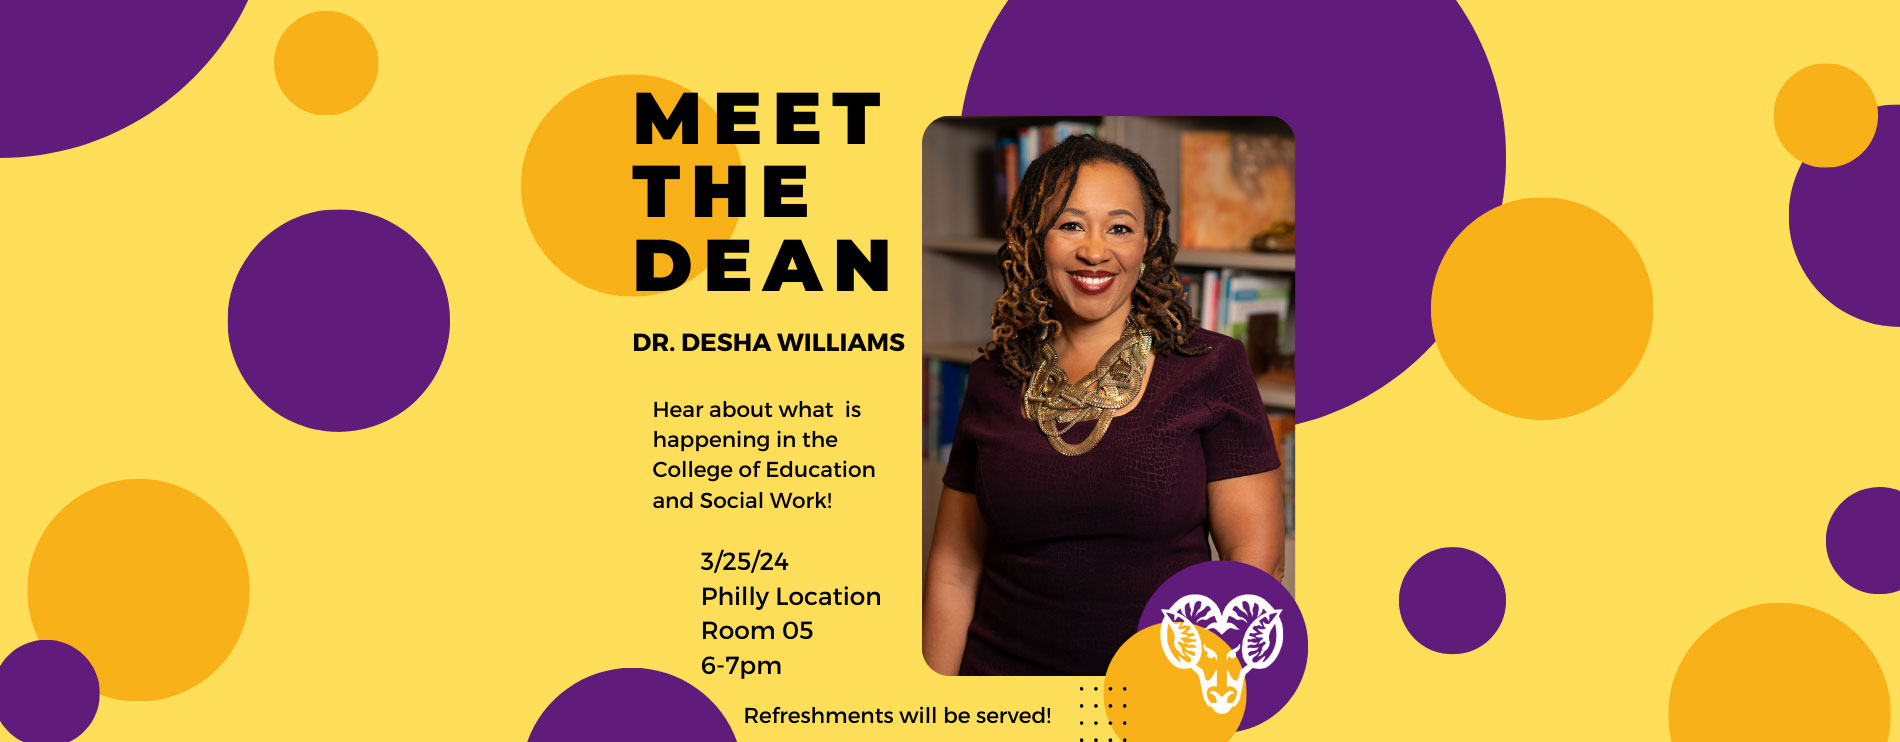 Meet the dean - Dr. Desha Williams